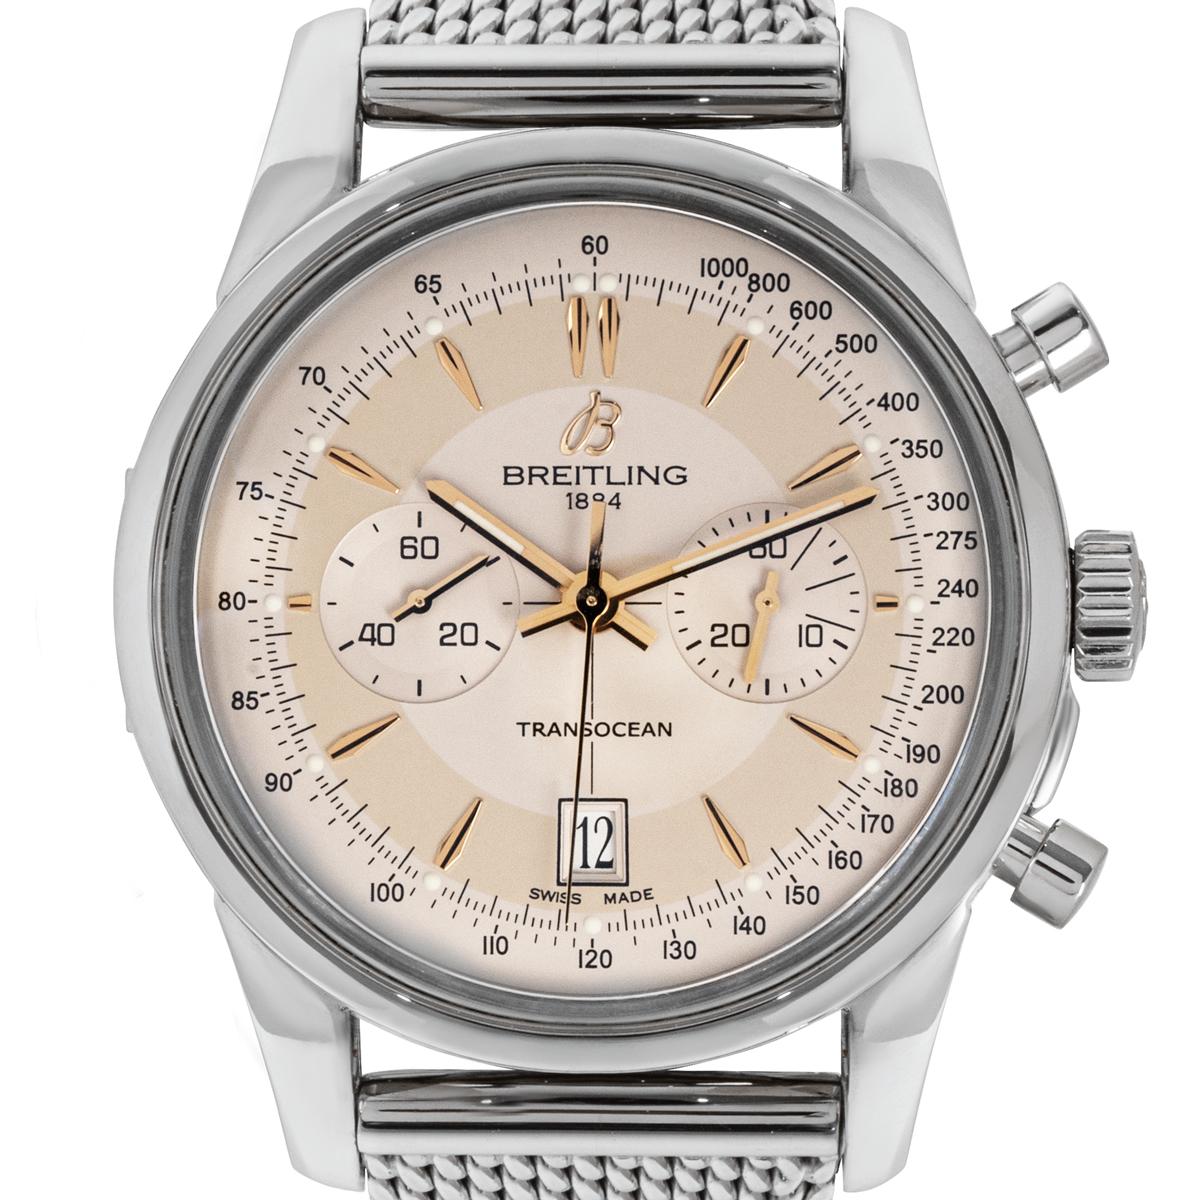 Une montre-bracelet pour homme Transocean Chronograph en acier inoxydable, en édition limitée, par Breitling.

Le cadran argenté est doté d'index appliqués, d'un compteur de 30 minutes à 3 heures, d'un indicateur de date à 6 heures, d'une petite